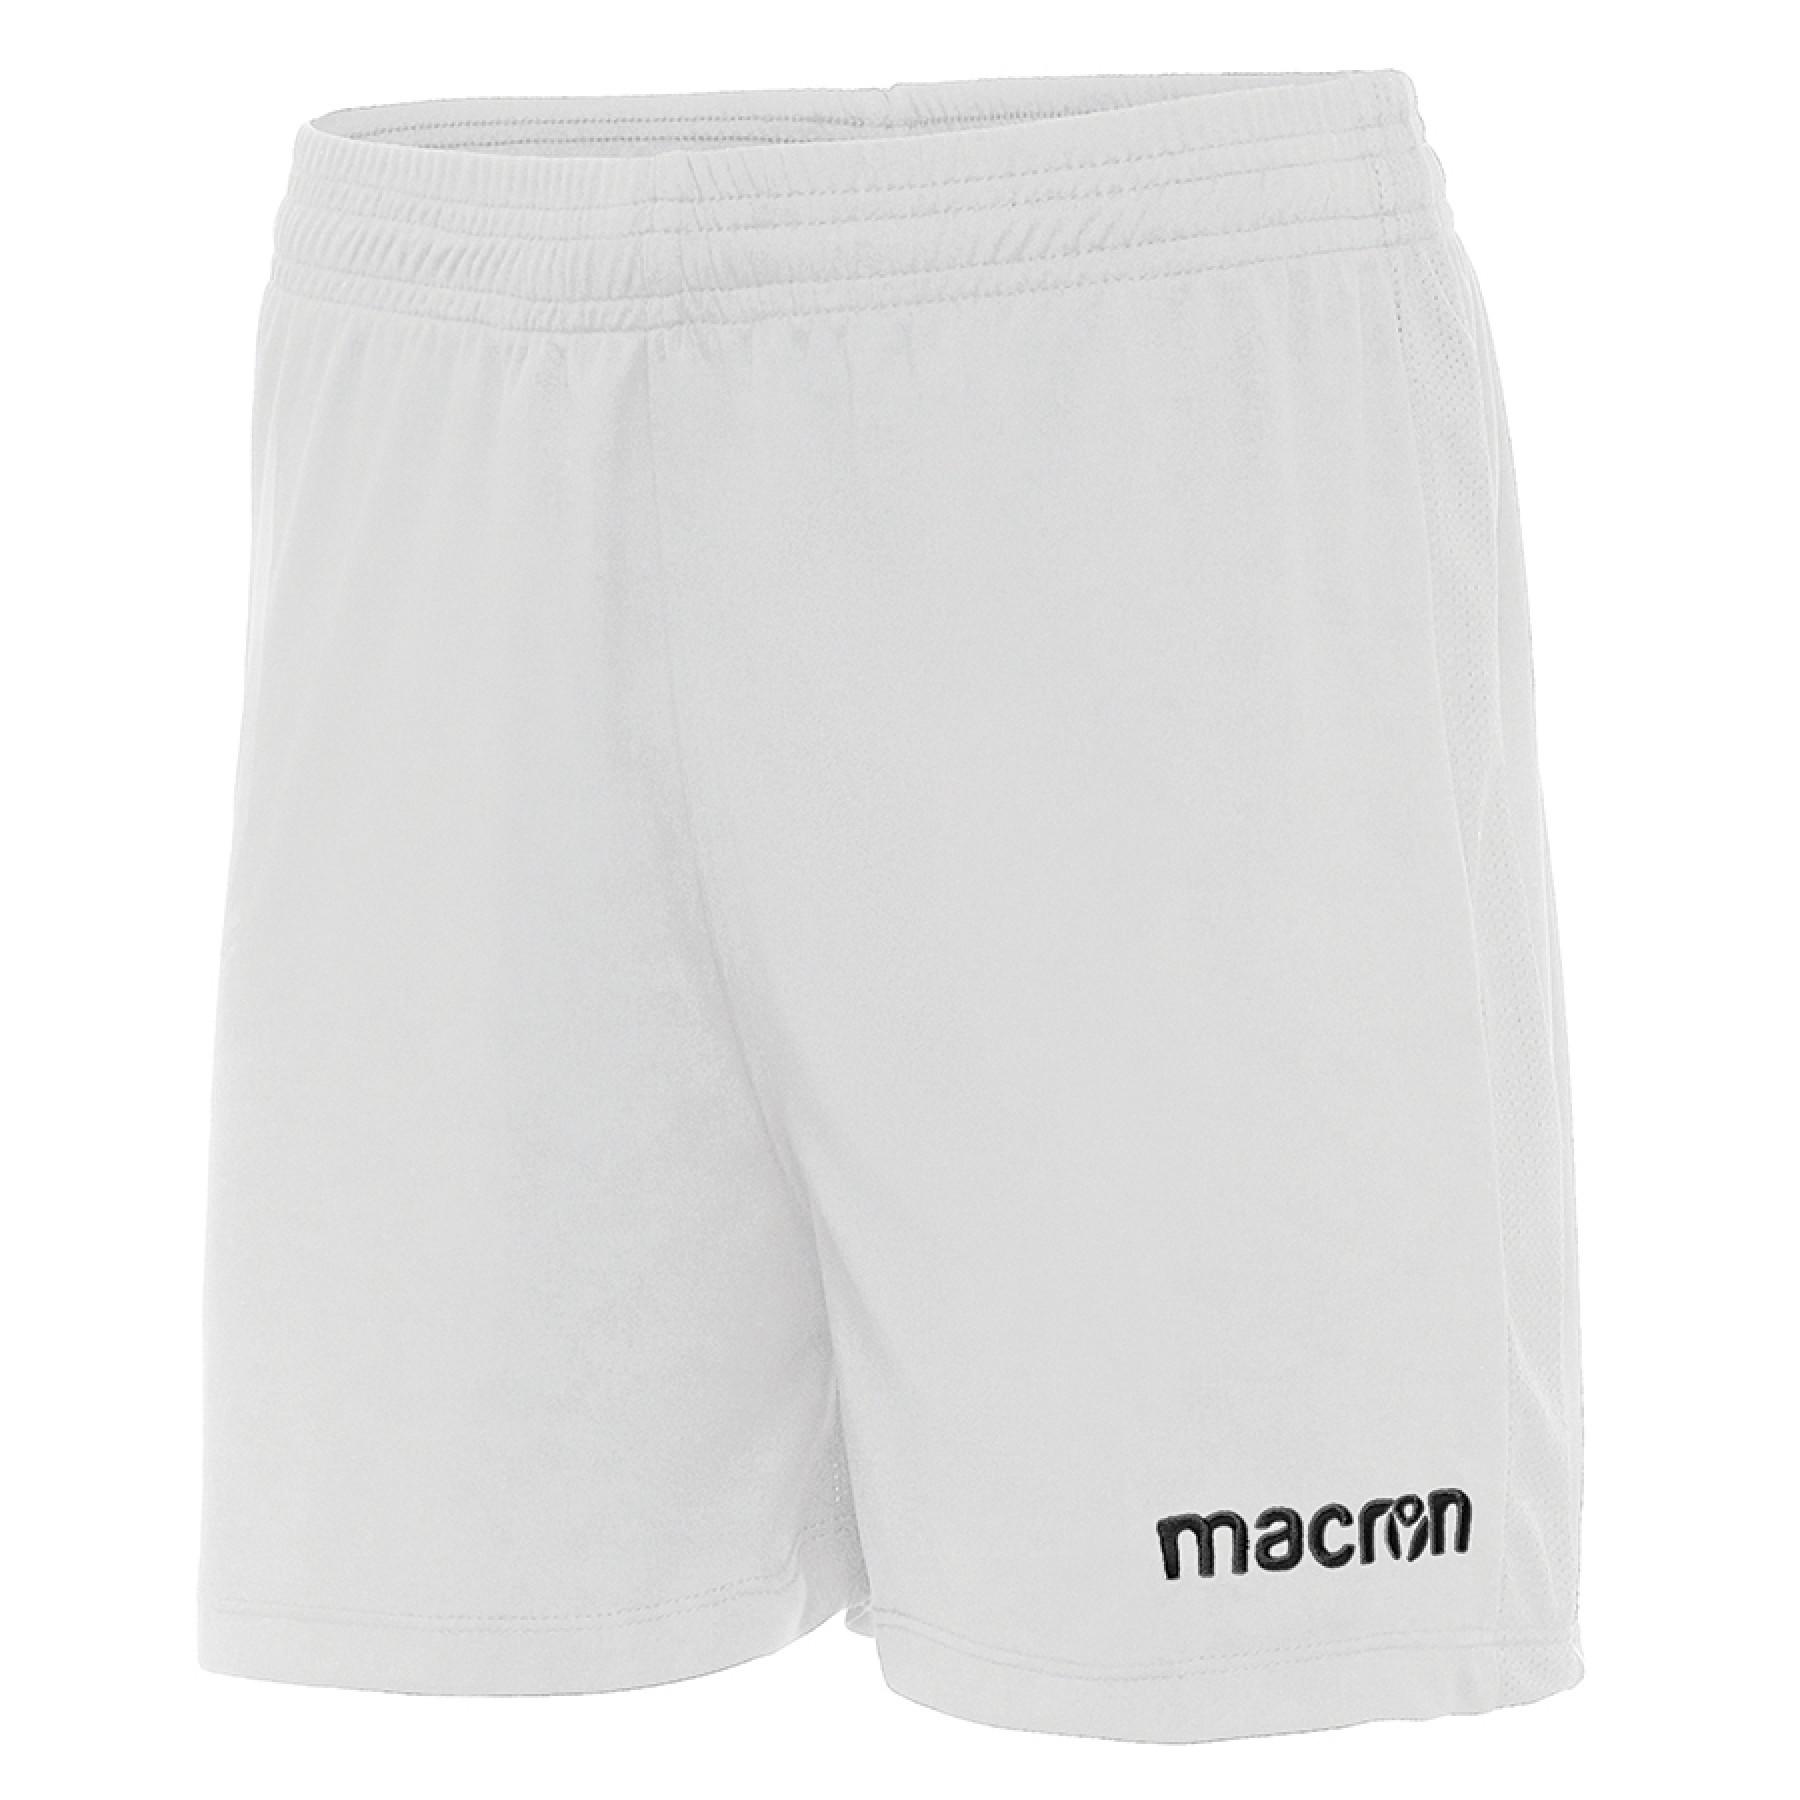 Pantalón corto de mujer Macron Acrux